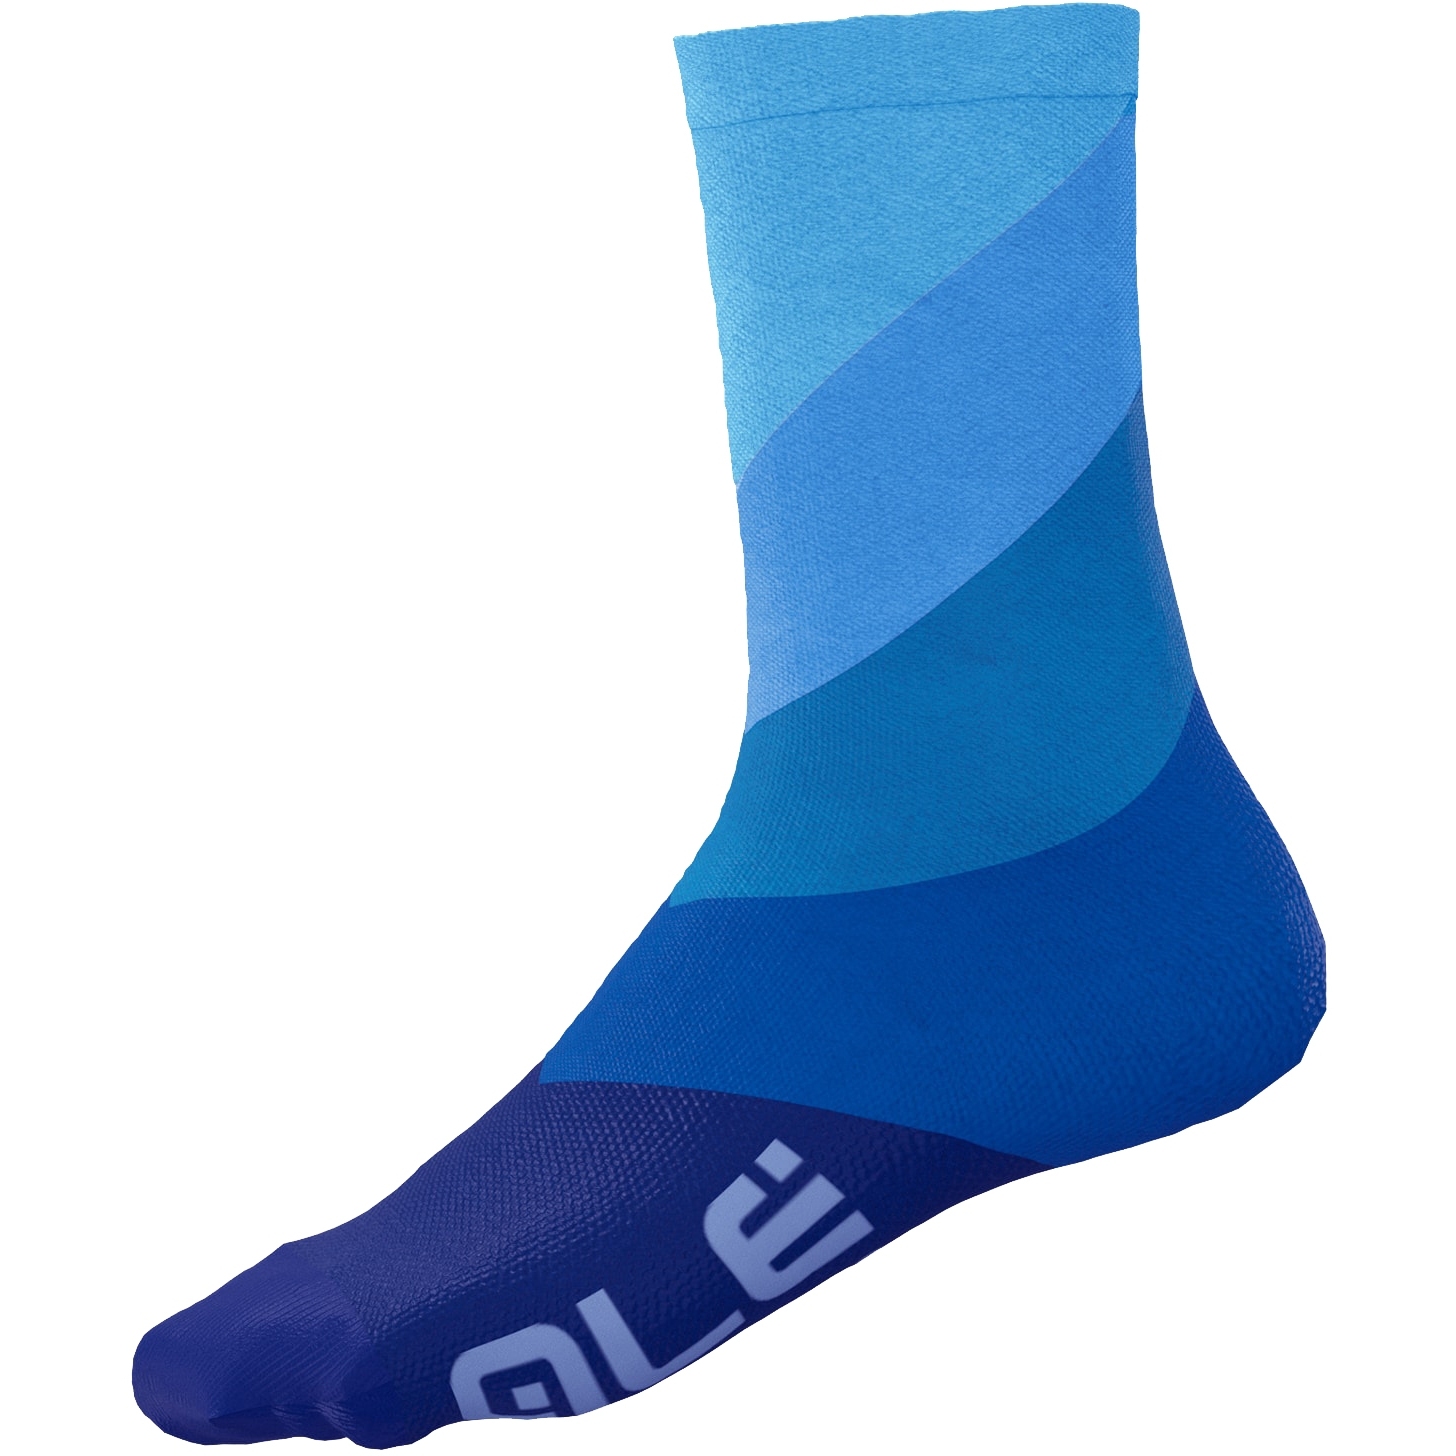 Productfoto van Alé Diagonal Digitopress Sokken Unisex - blauw